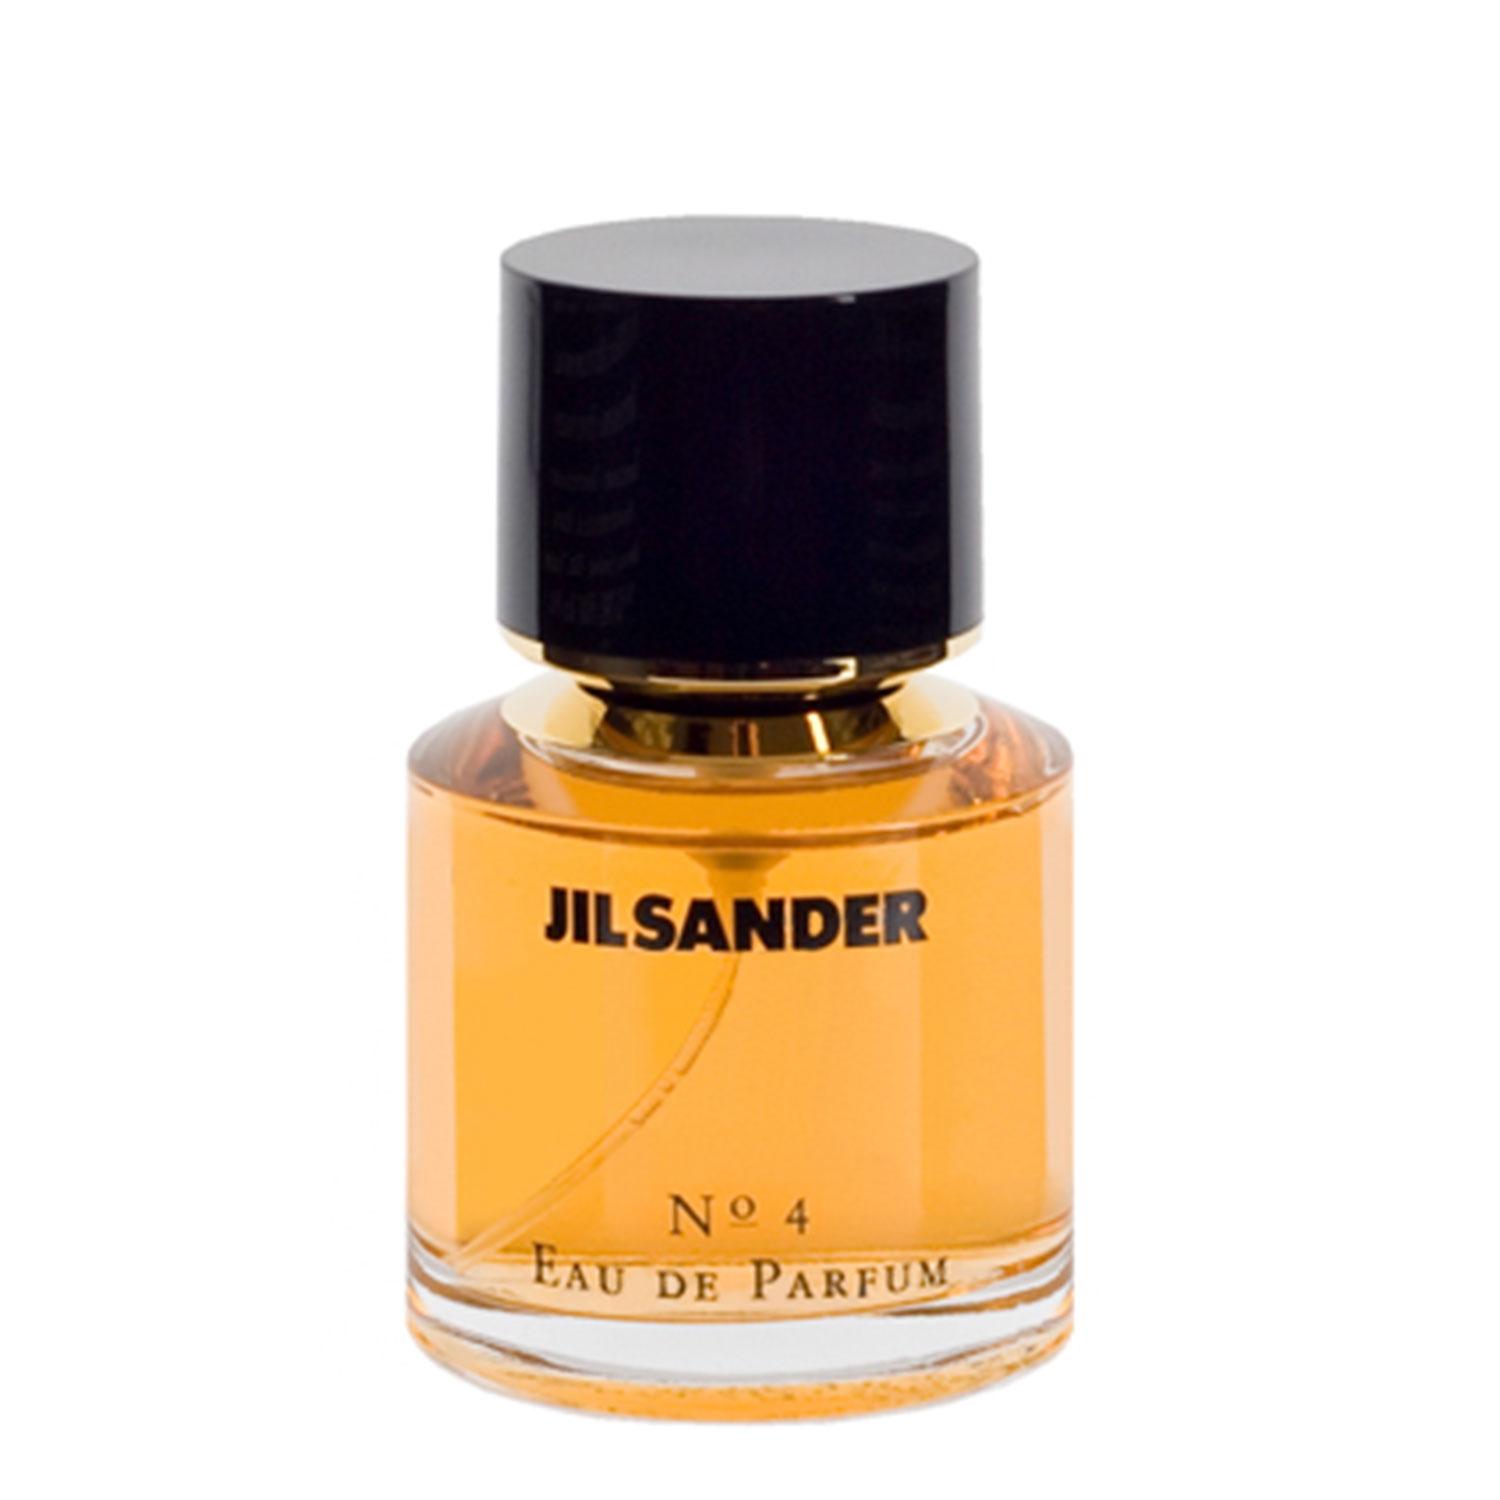 Jil Sander - N° 4 Eau de Parfum